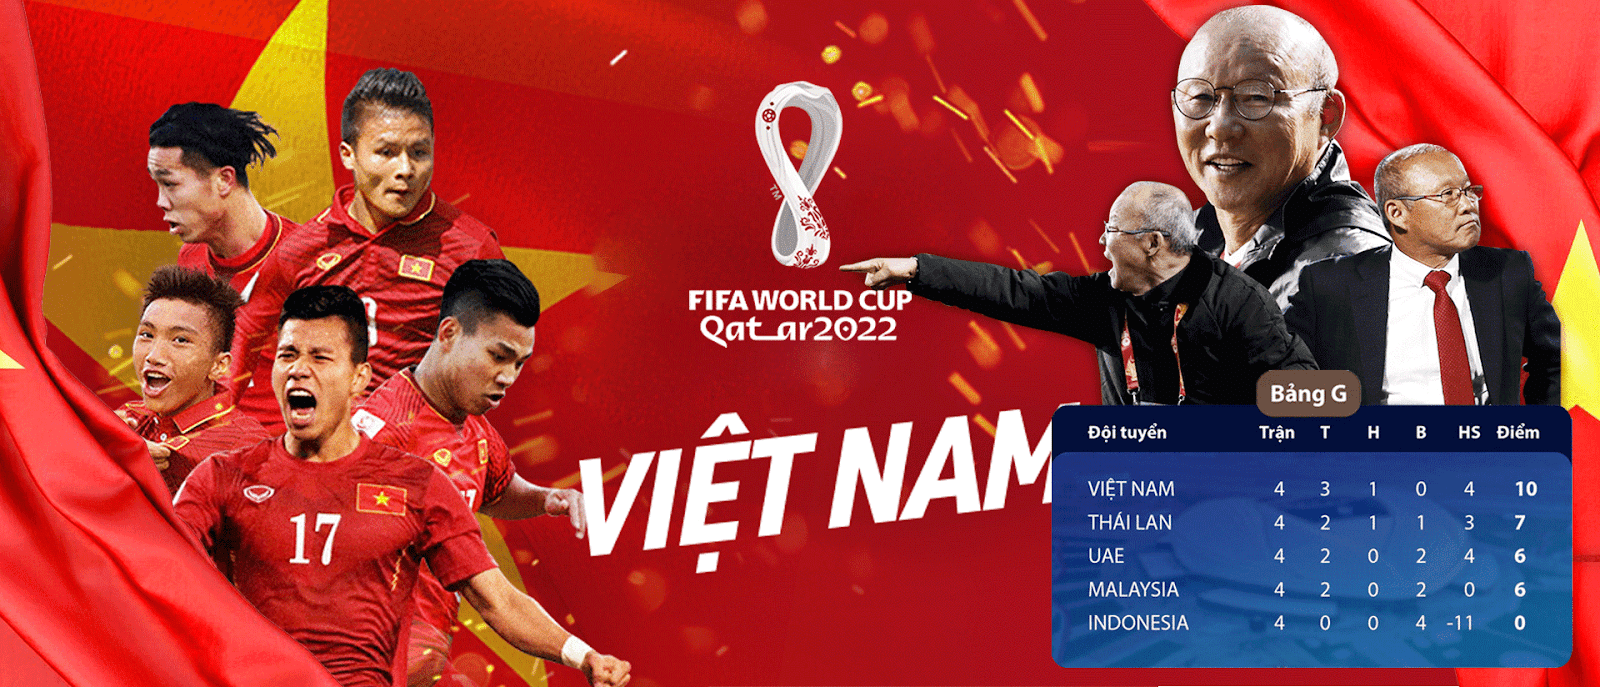 Bóng Đá 24h – Thương hiệu cá độ bóng đá số 1 tại Việt Nam
